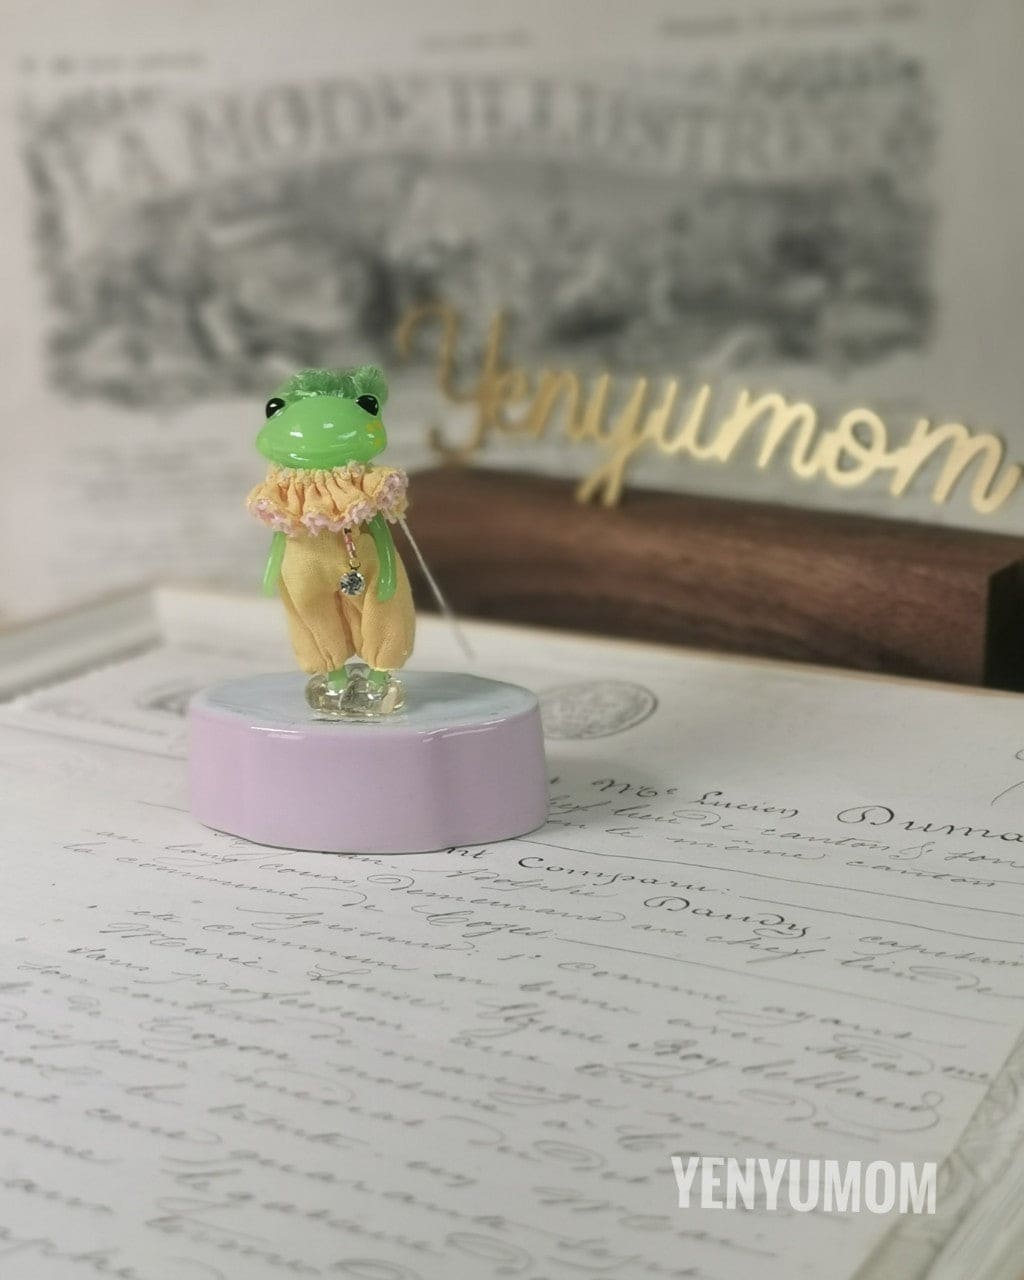 【Yenyumom】Ruff Embroidery Rompers / Furtune Wanda Friends Wonder Frog